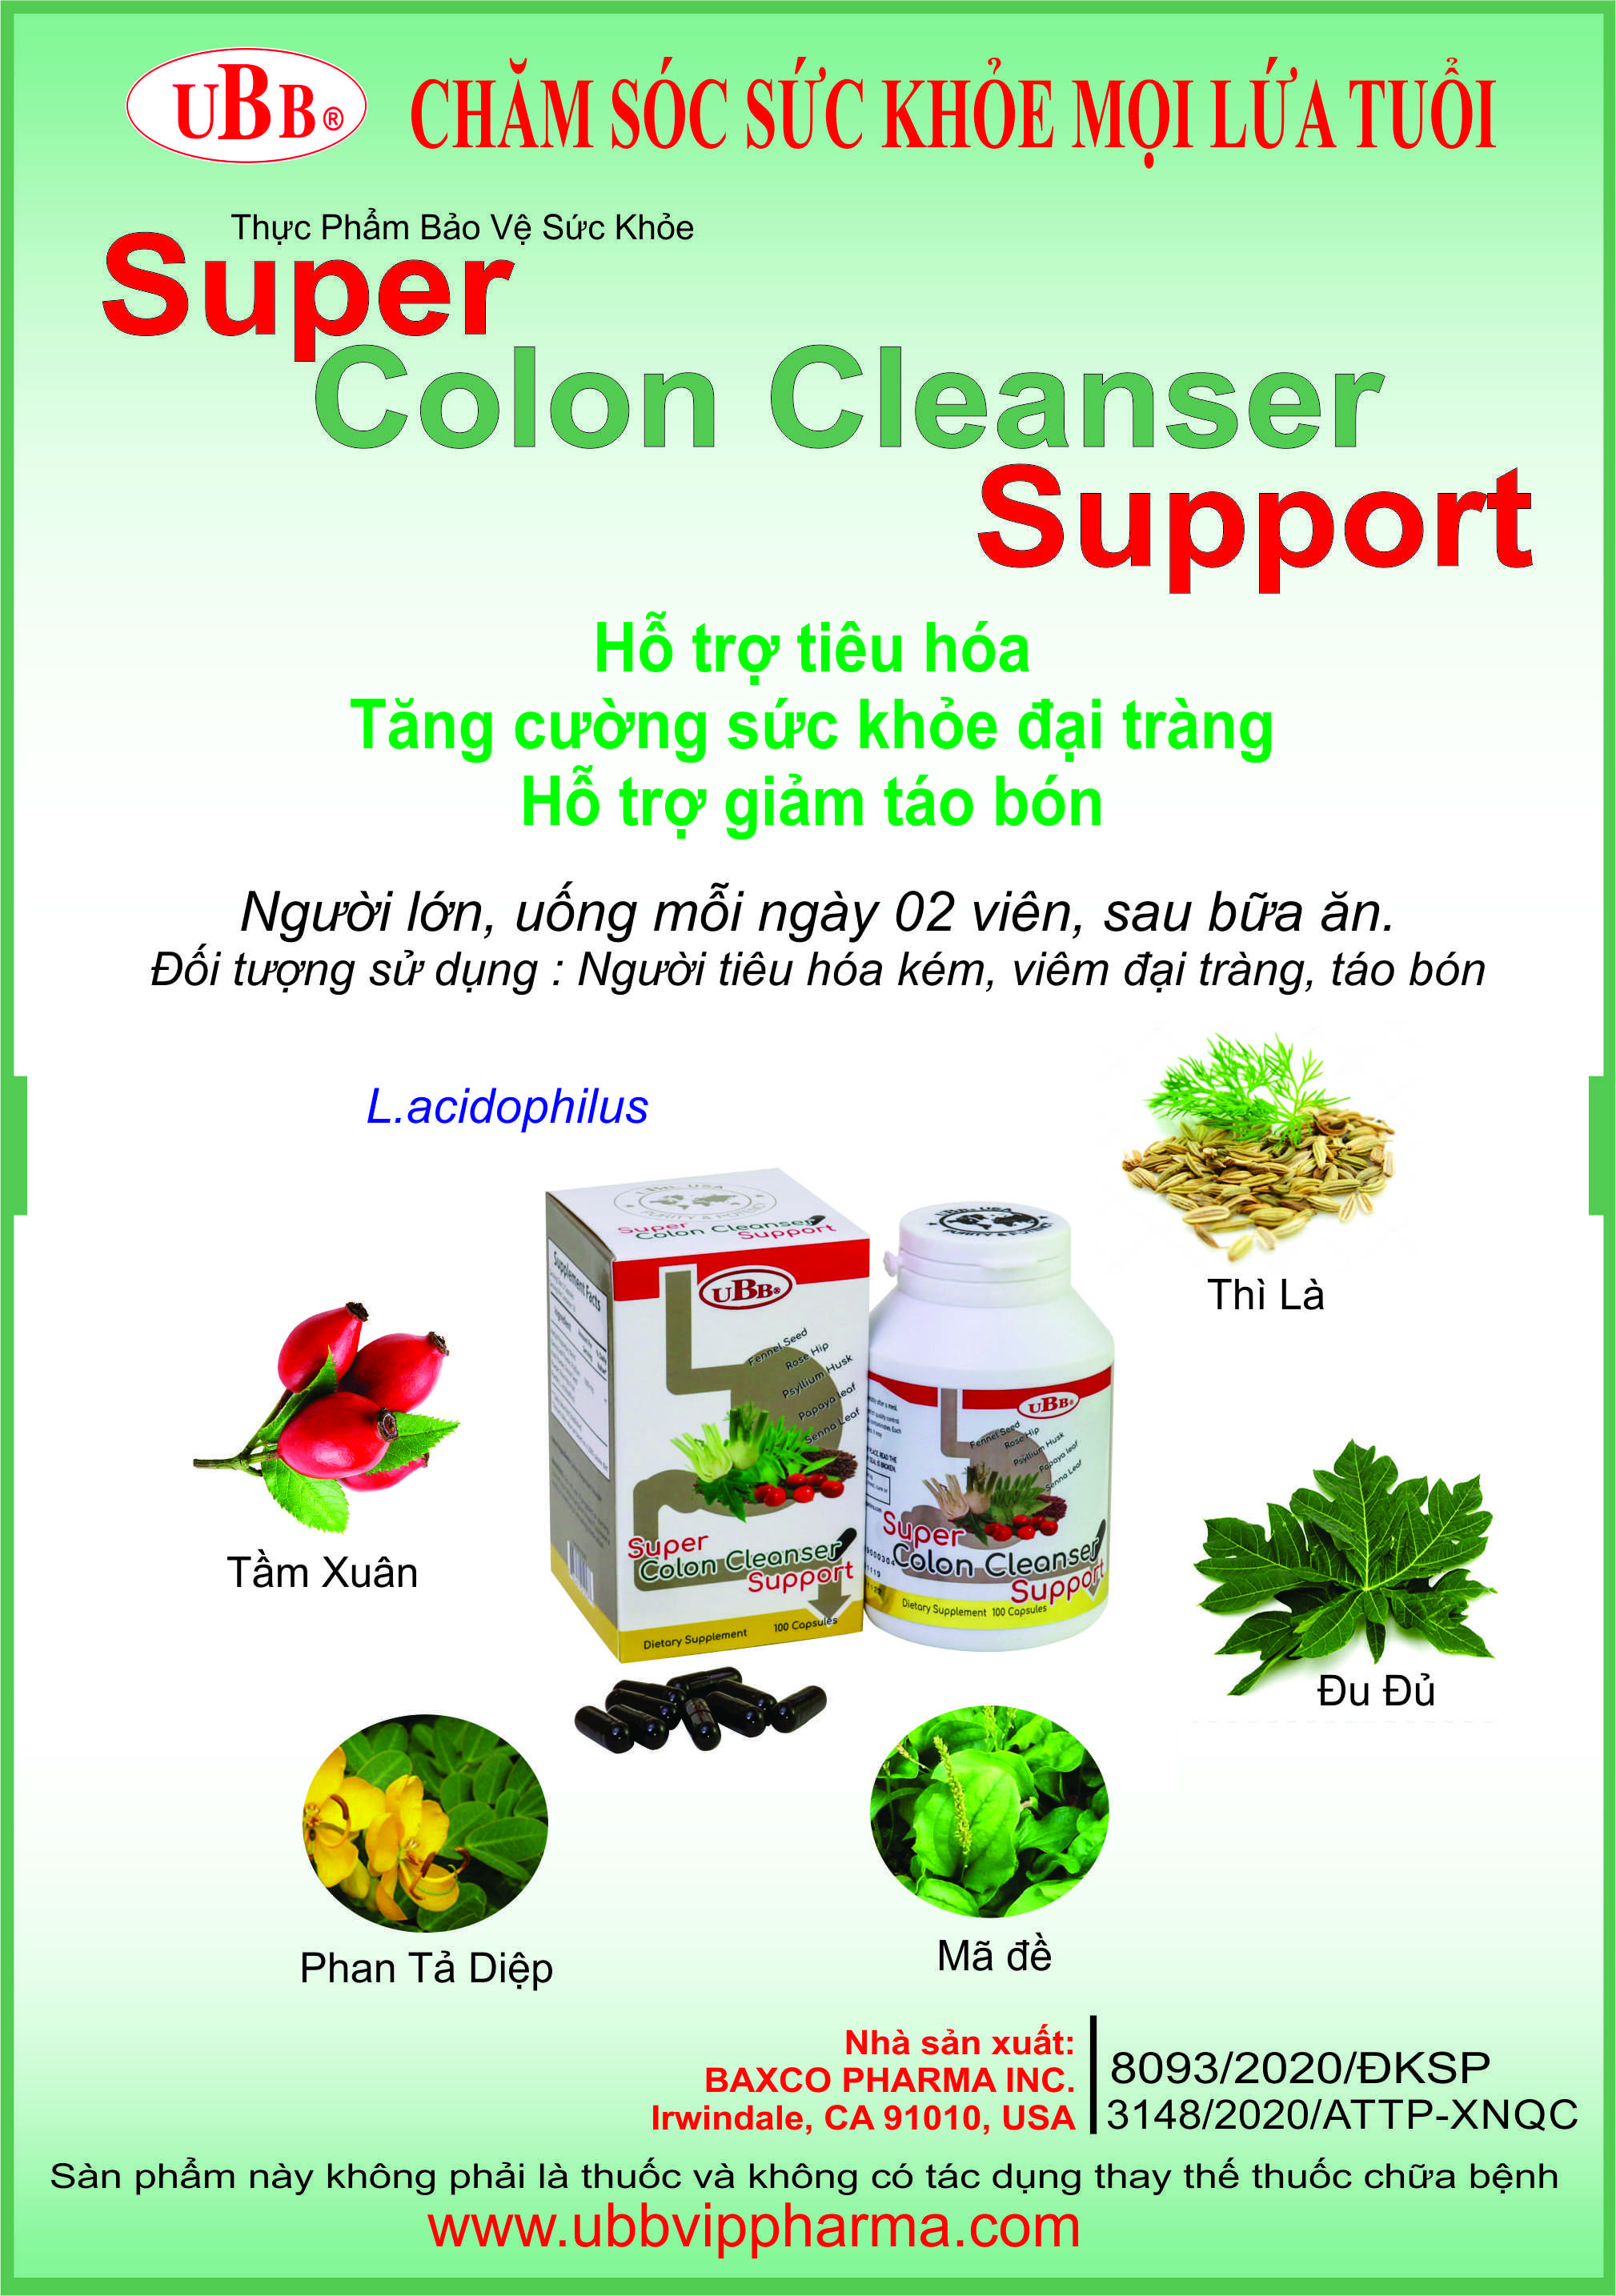 Thực Phẩm Chức Năng - Super Colon Cleanser Support - Hỗ Trợ Tăng Cường Sức Khỏe Đại Tràng, Giảm táo bón, Làm sạch đại tràng